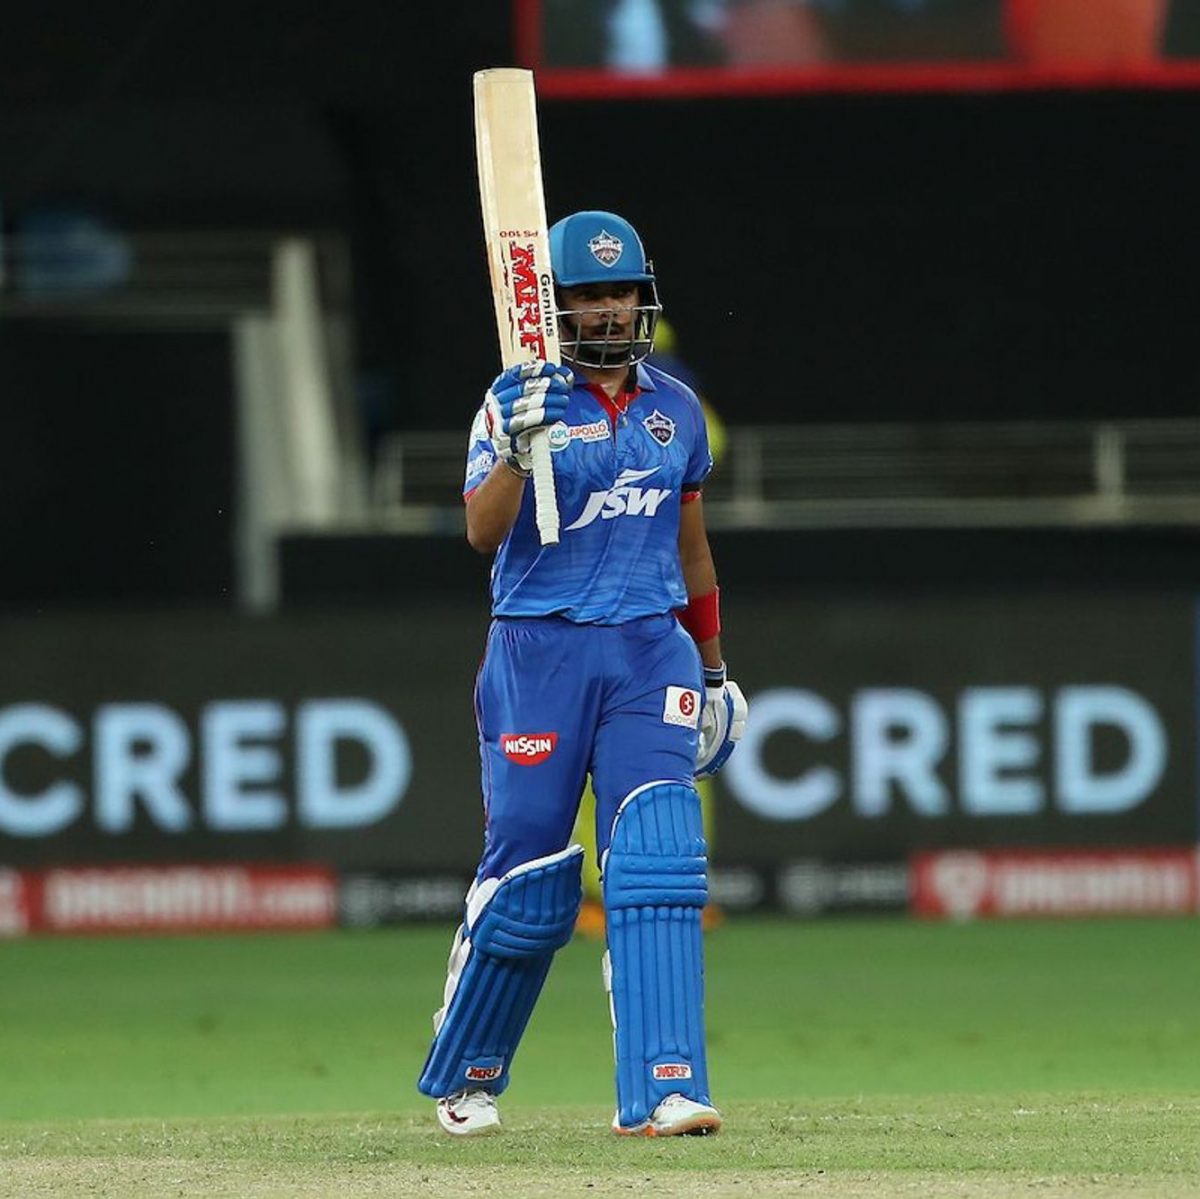 Prithvi Shaw scored 64 runs off 43 balls for Delhi Capitals. (IPL photo)